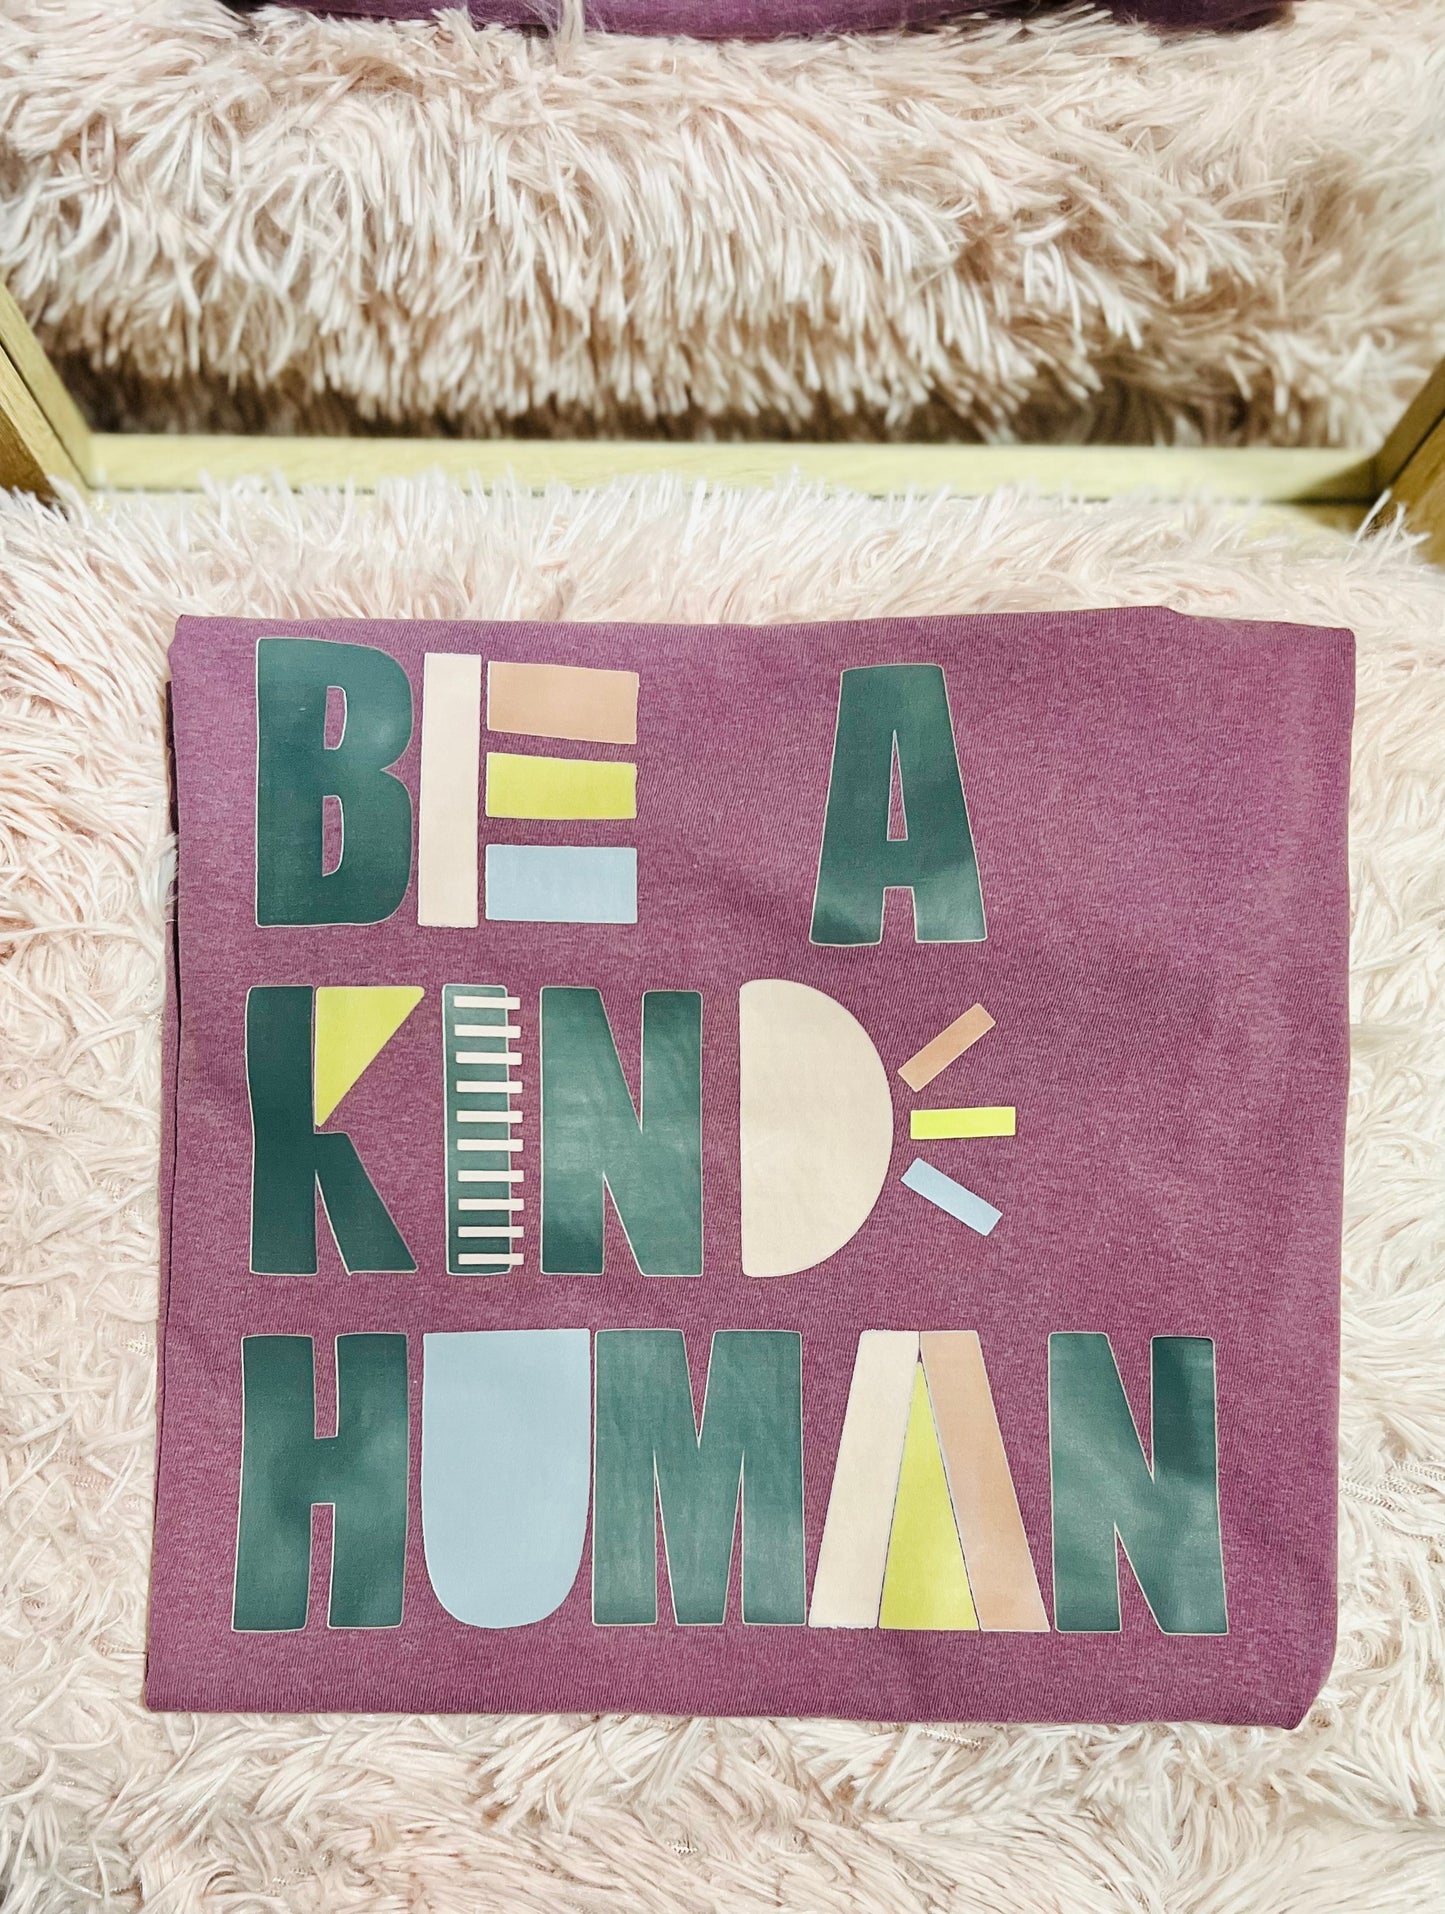 Be a Kind Human